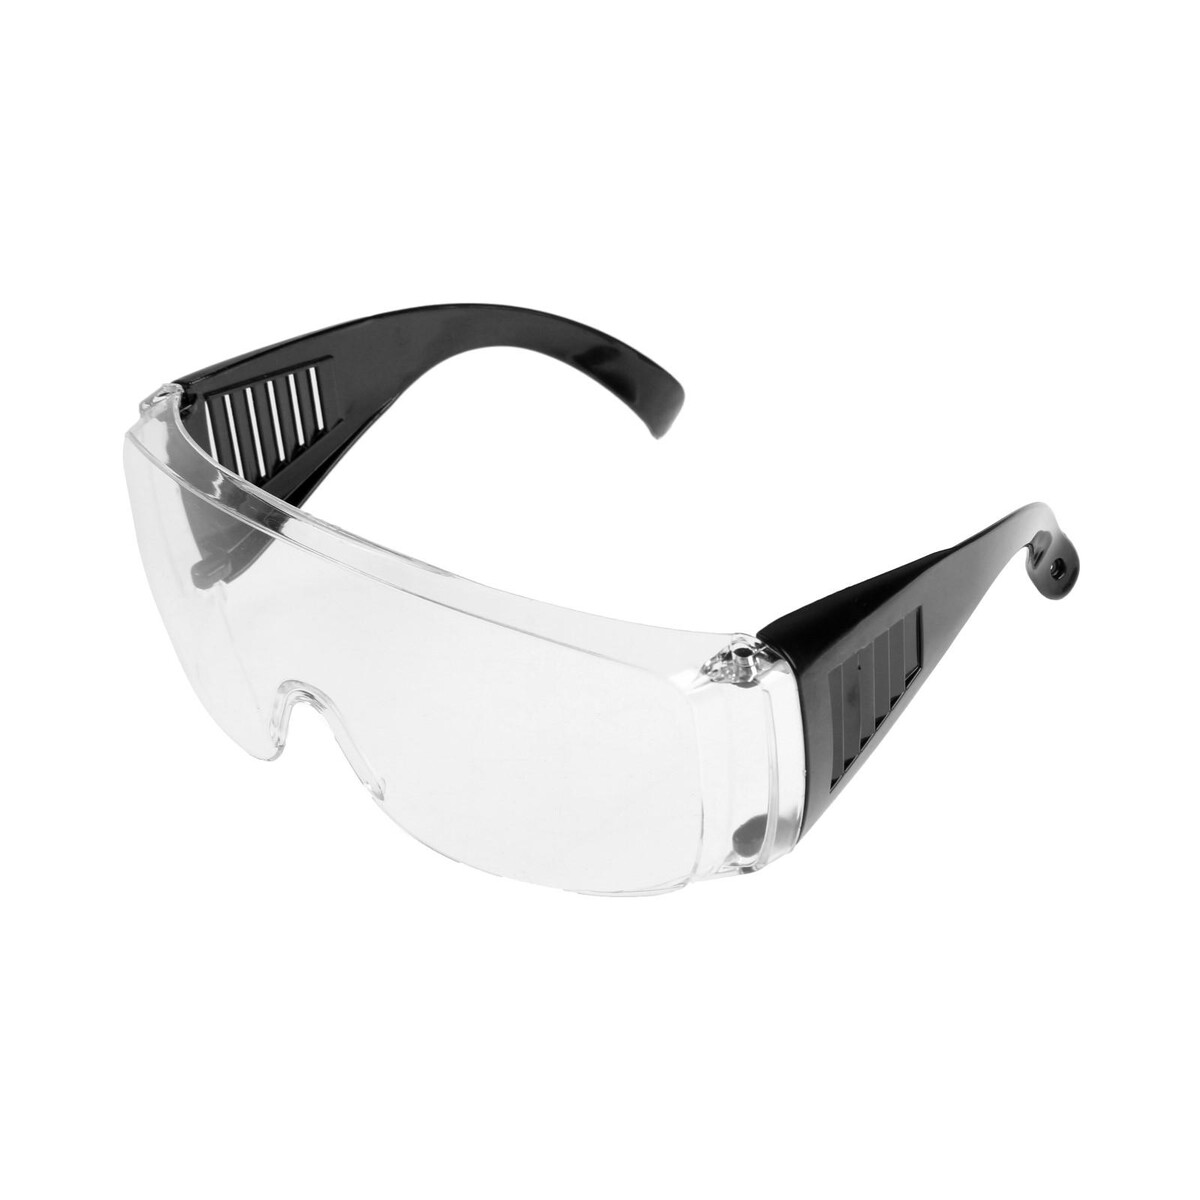 Очки защитные тундра, с поликарбонатными линзами, прозрачные, черные дужки очки защитные открытые о35 визион super 5 pc поликарбонат